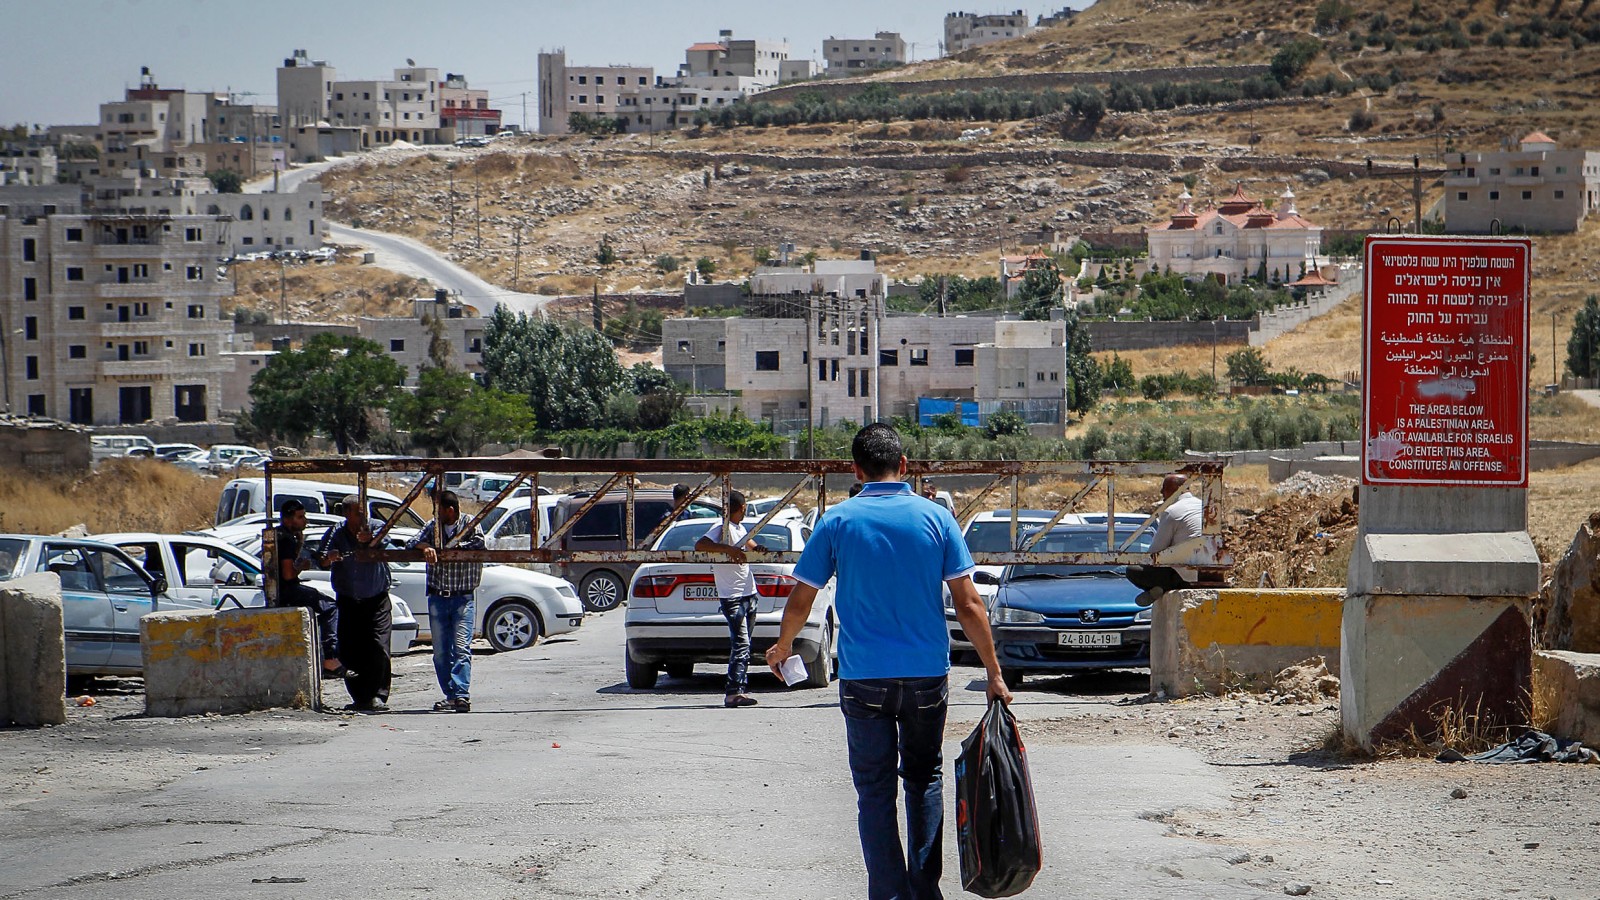 פלסטינים עוברים במחסום מחוץ ליישוב סיעיר בגדה המערבית (צילום ארכיון: וויסאם חשלאמון פלאש 90).